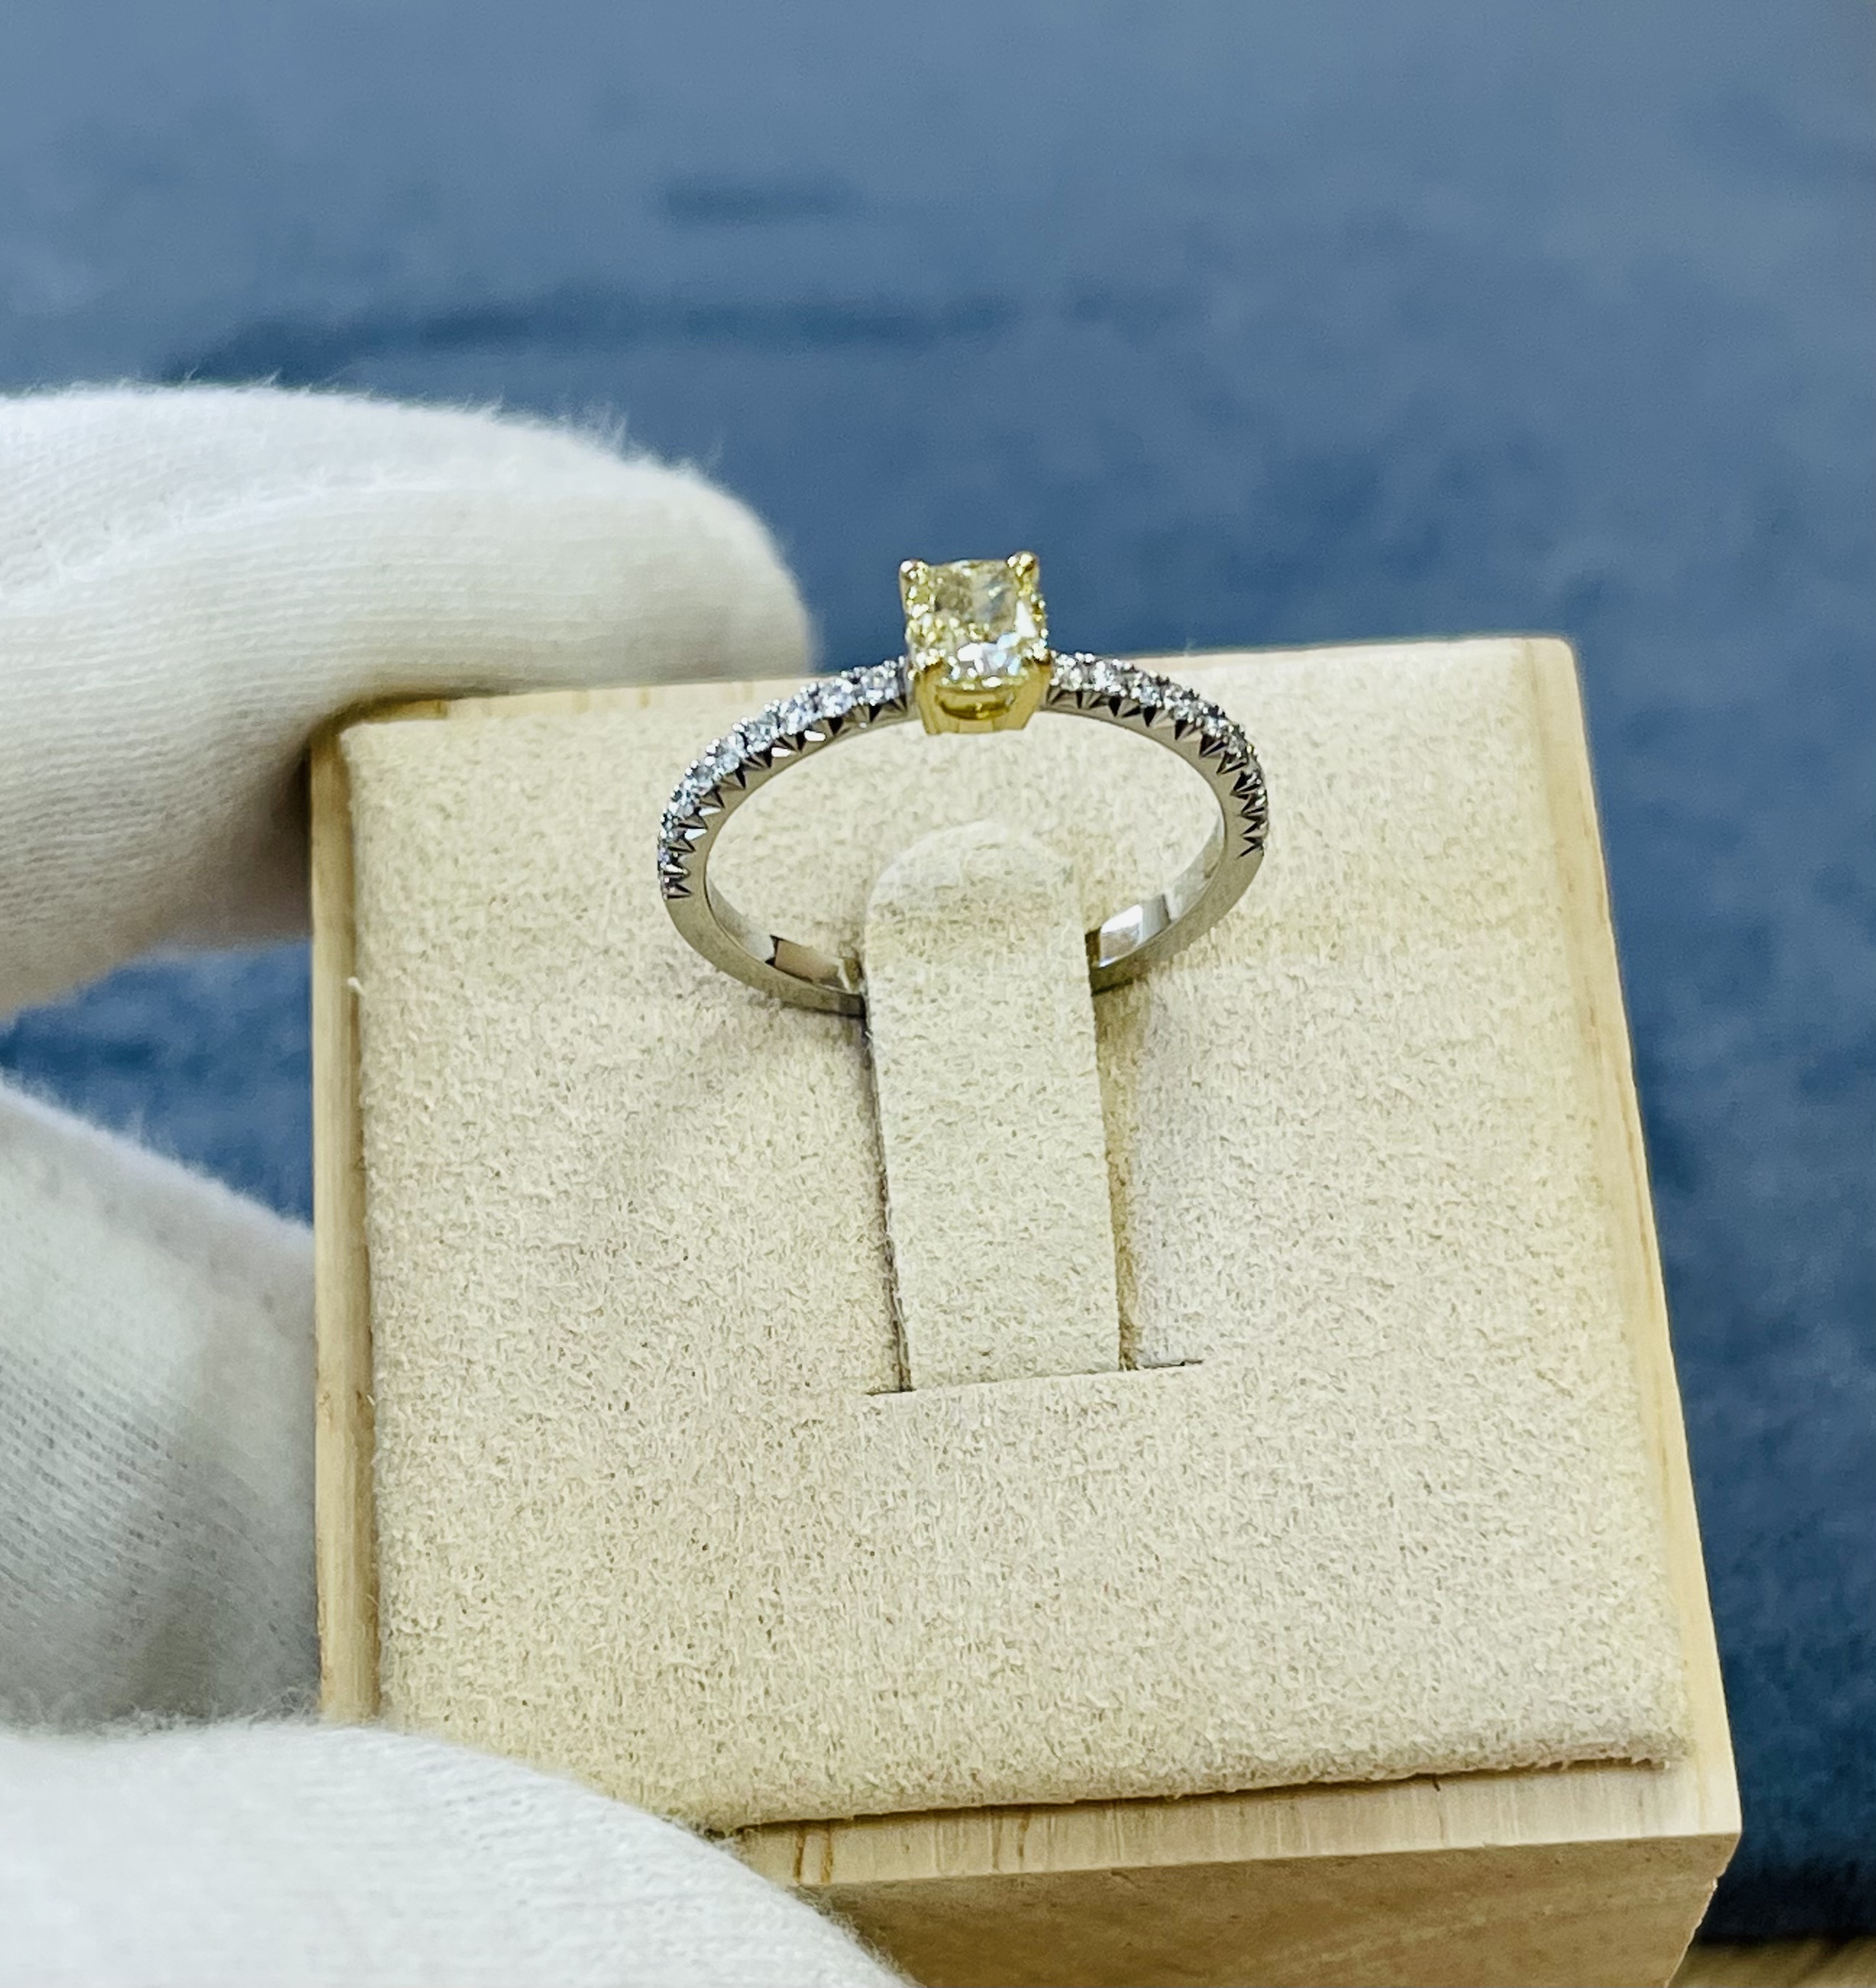 Кольцо с жёлтым бриллиантом огранки «Кушон»(0,50 ct.) из платины 